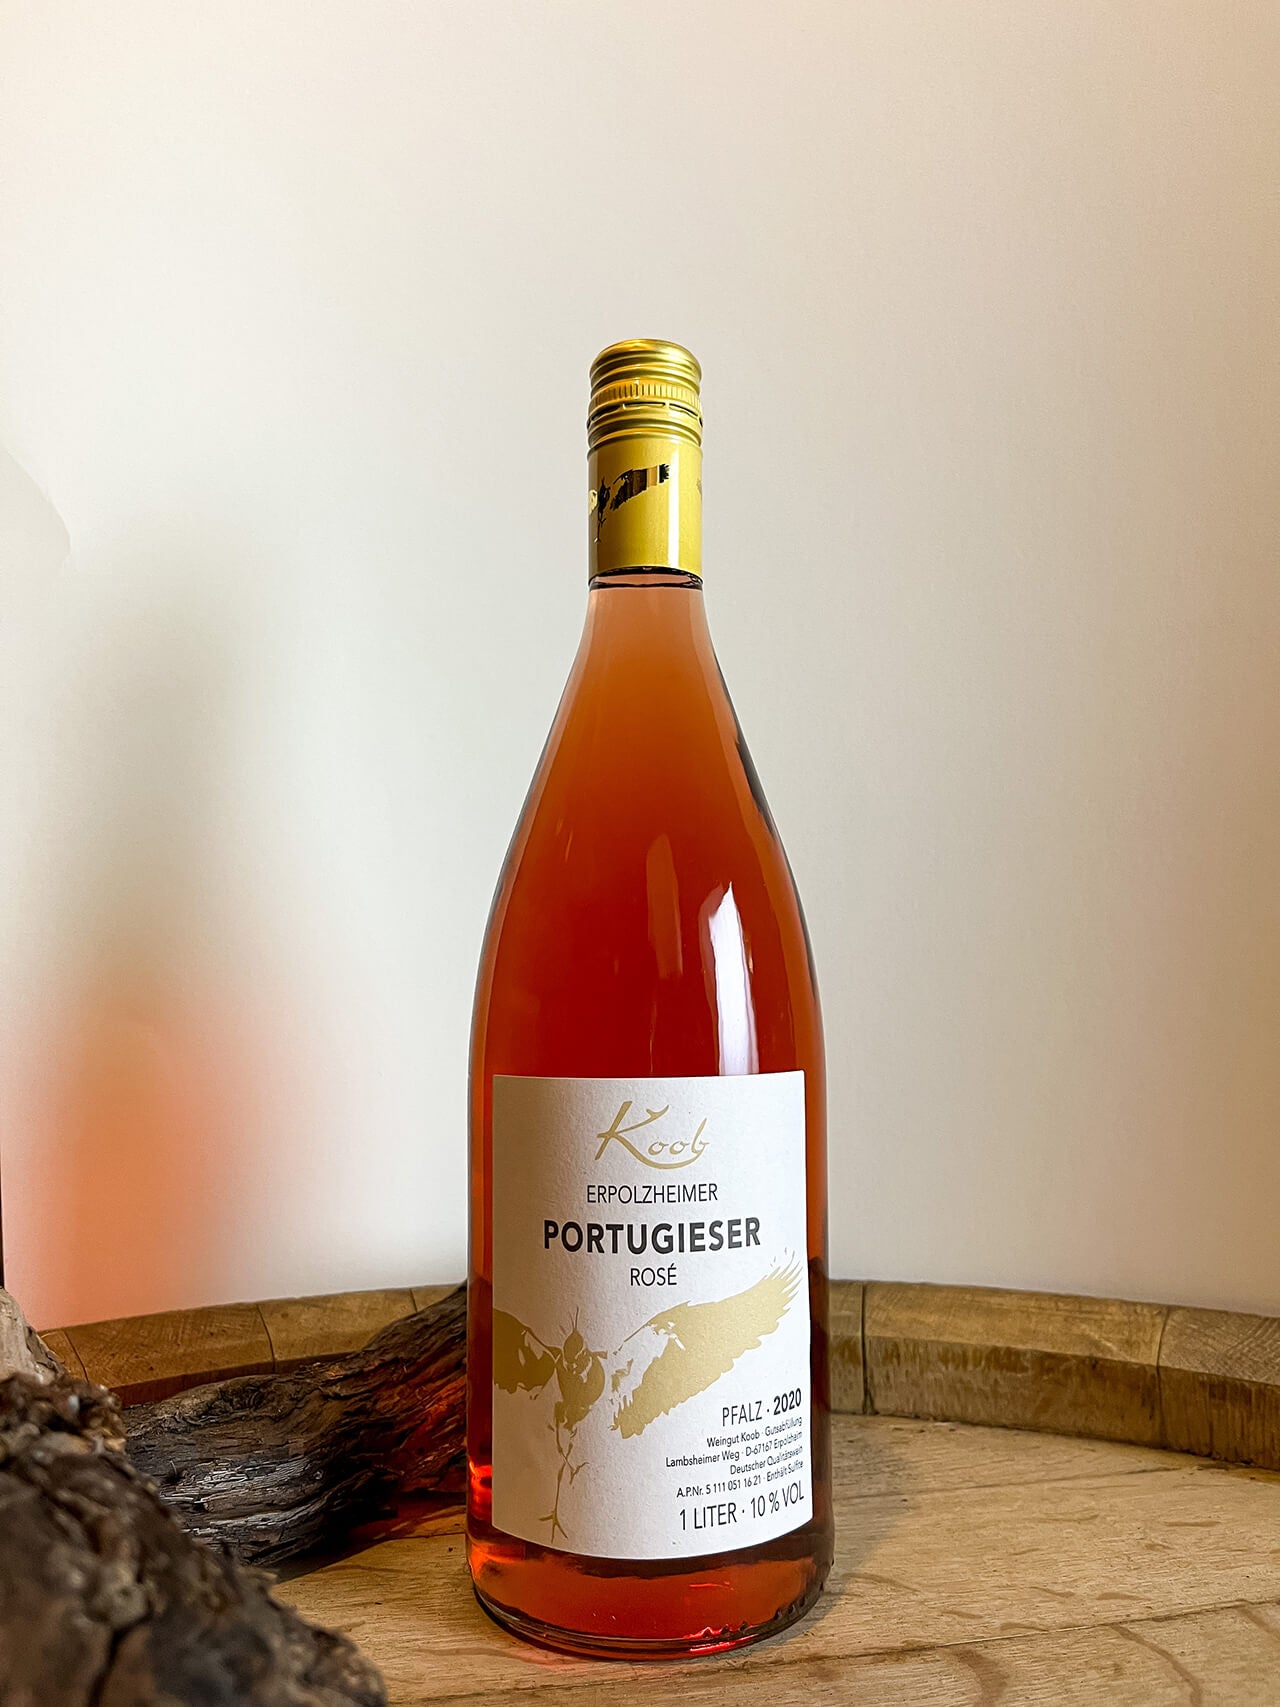 Koob lieblich Erpolzheimer – Rosé Weingut Portugieser